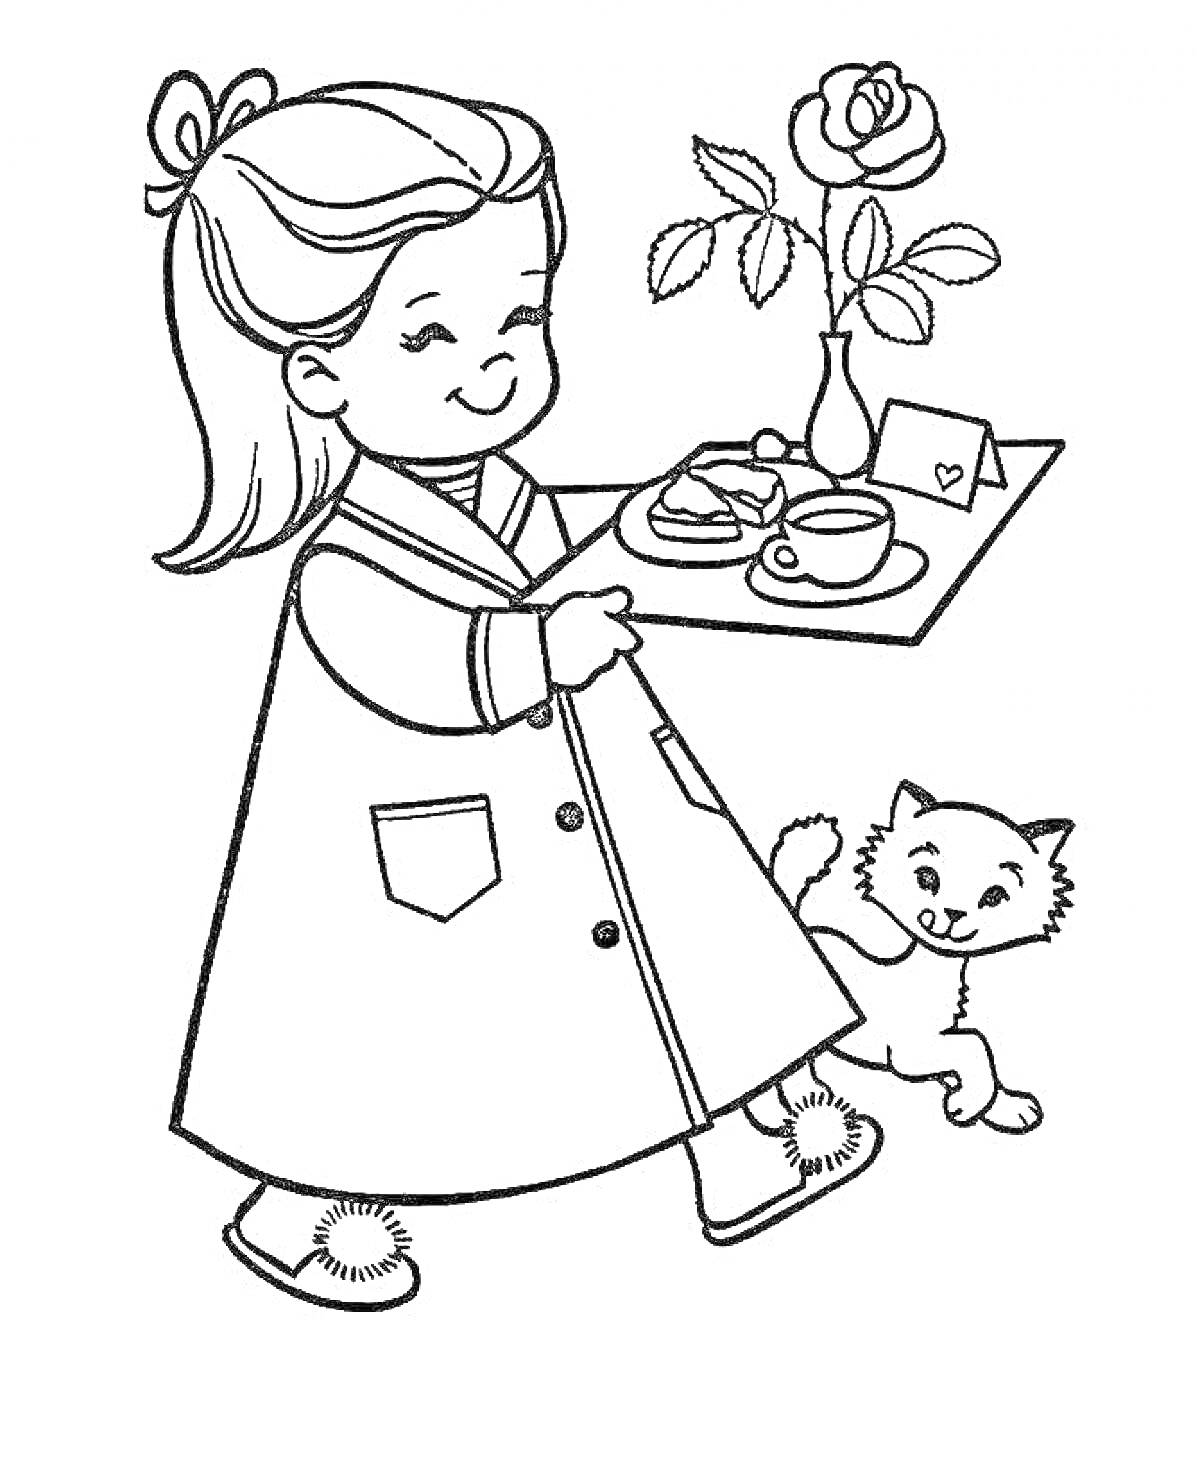 Раскраска Девочка с подносом, на котором находится роза, чашка, блюдце, письмо и бутерброд. Рядом с девочкой стоит кошка.